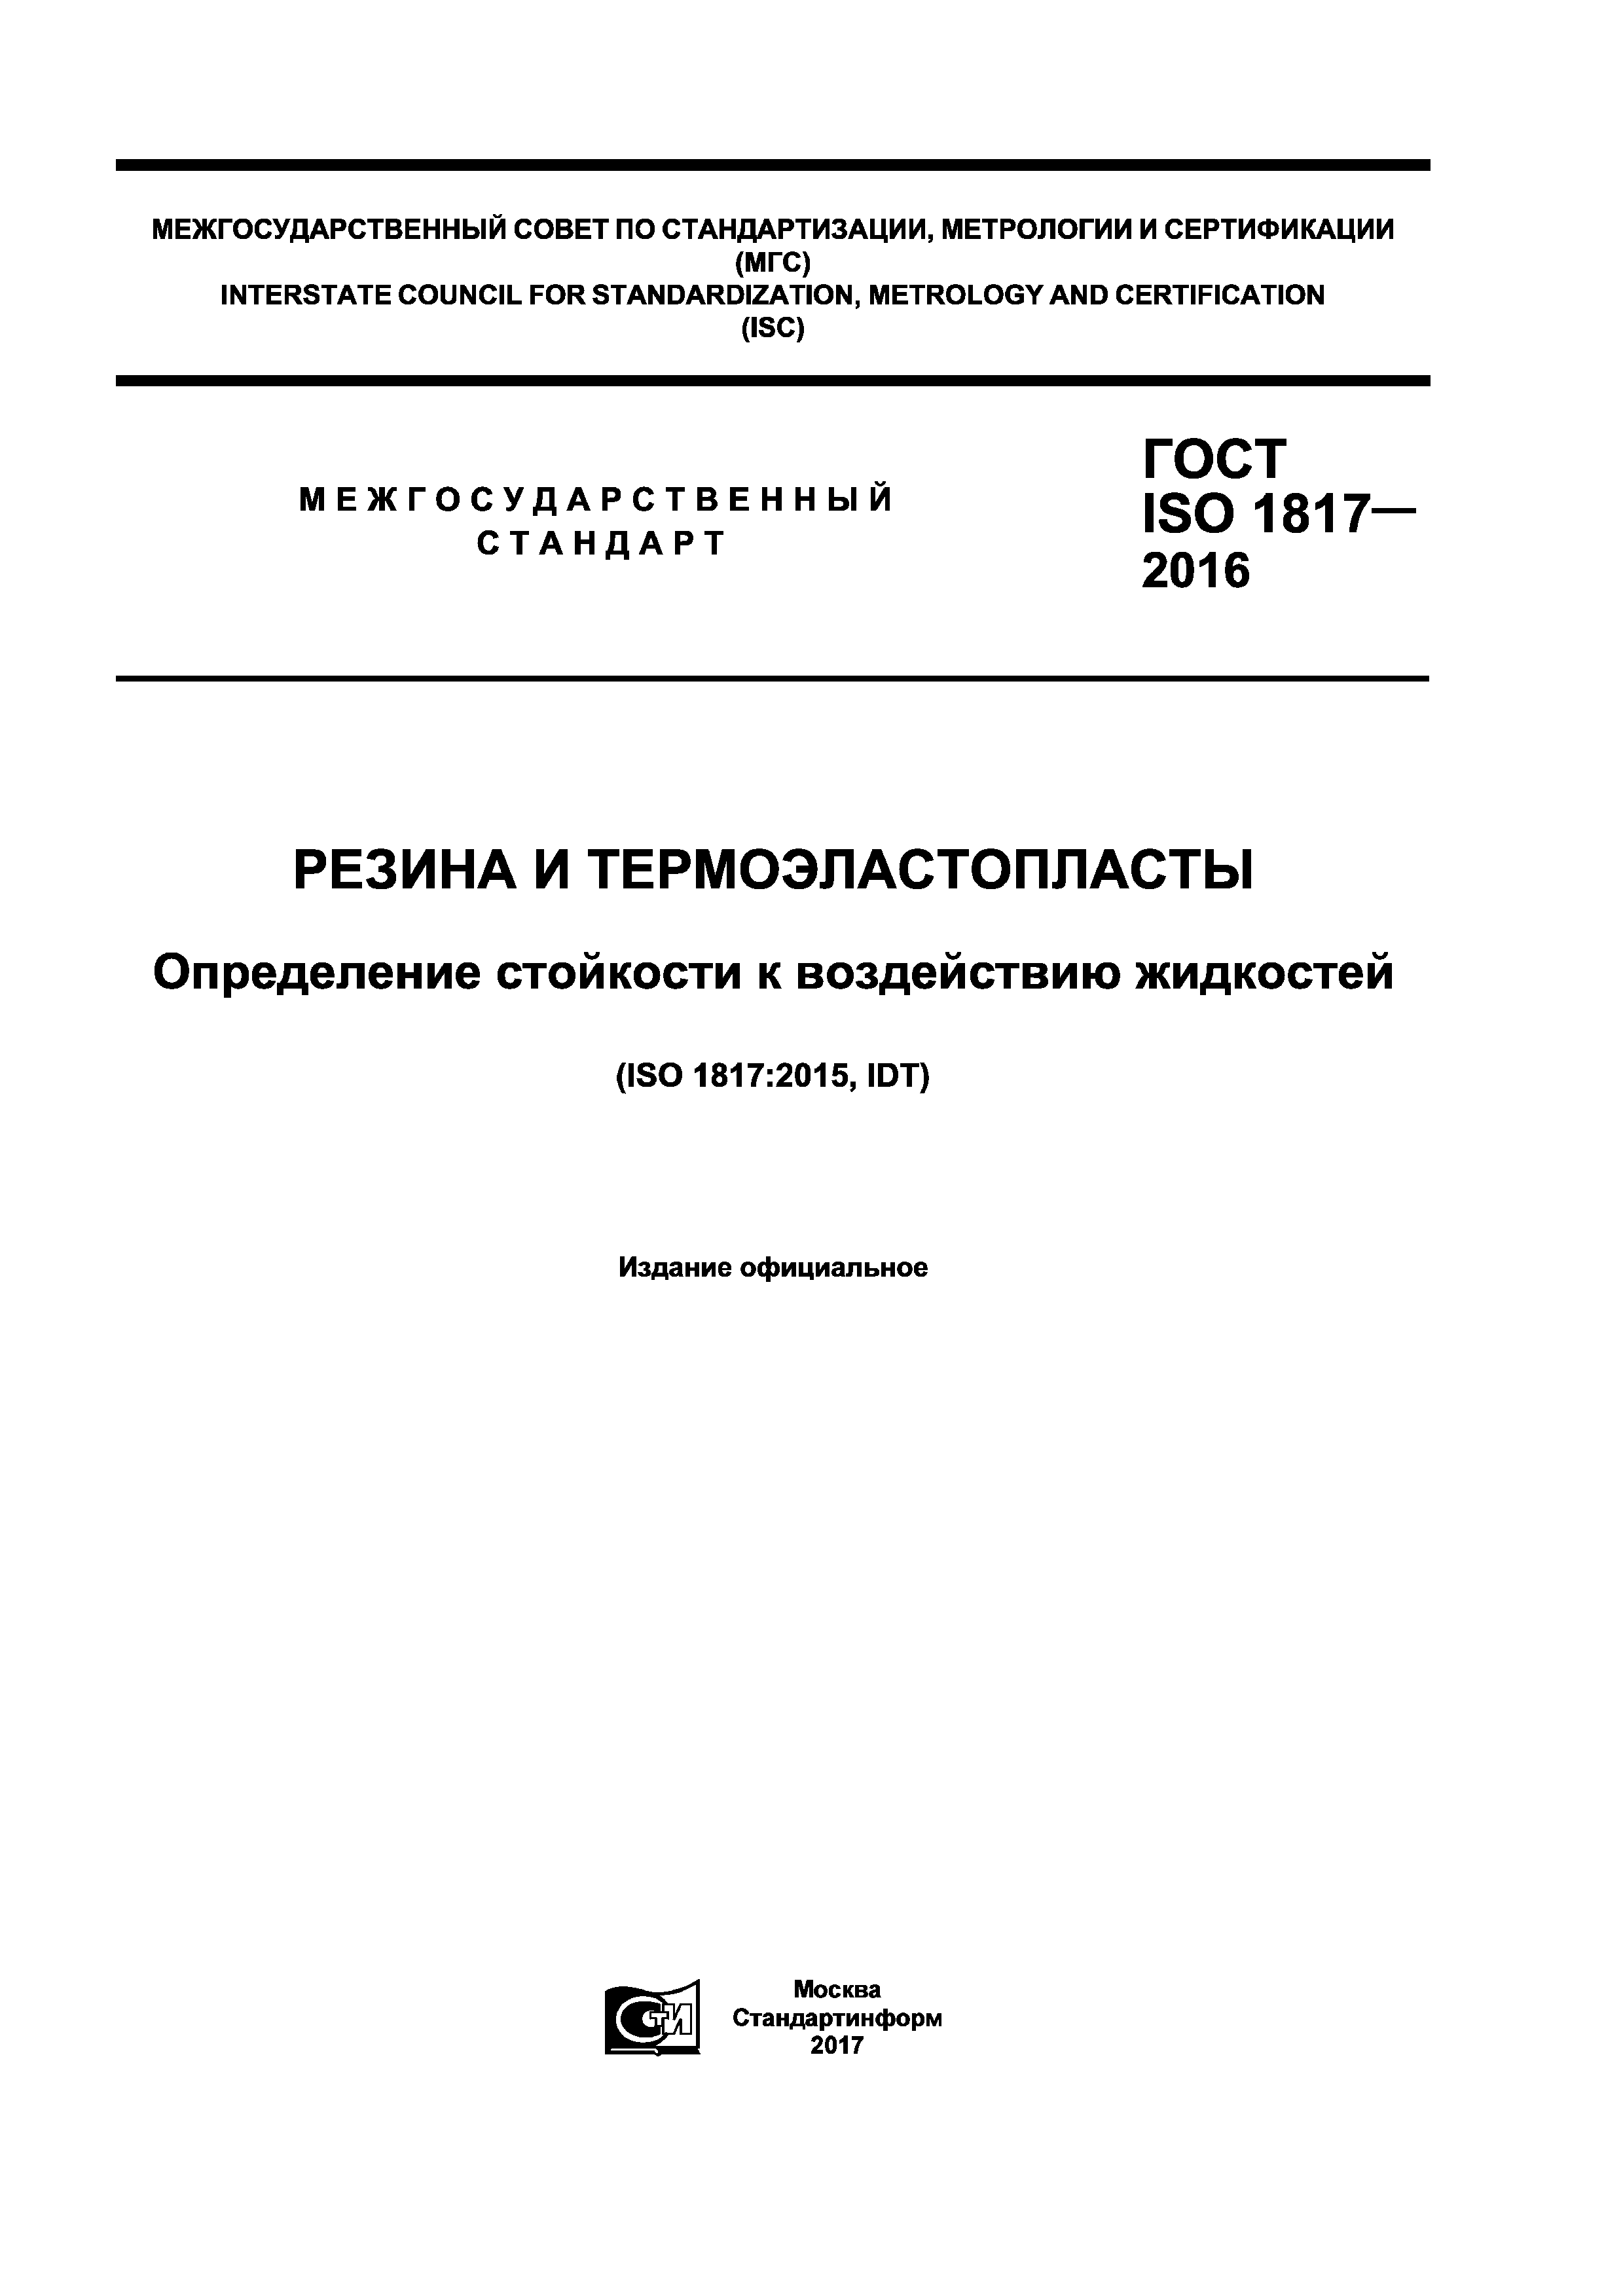 ГОСТ ISO 1817-2016